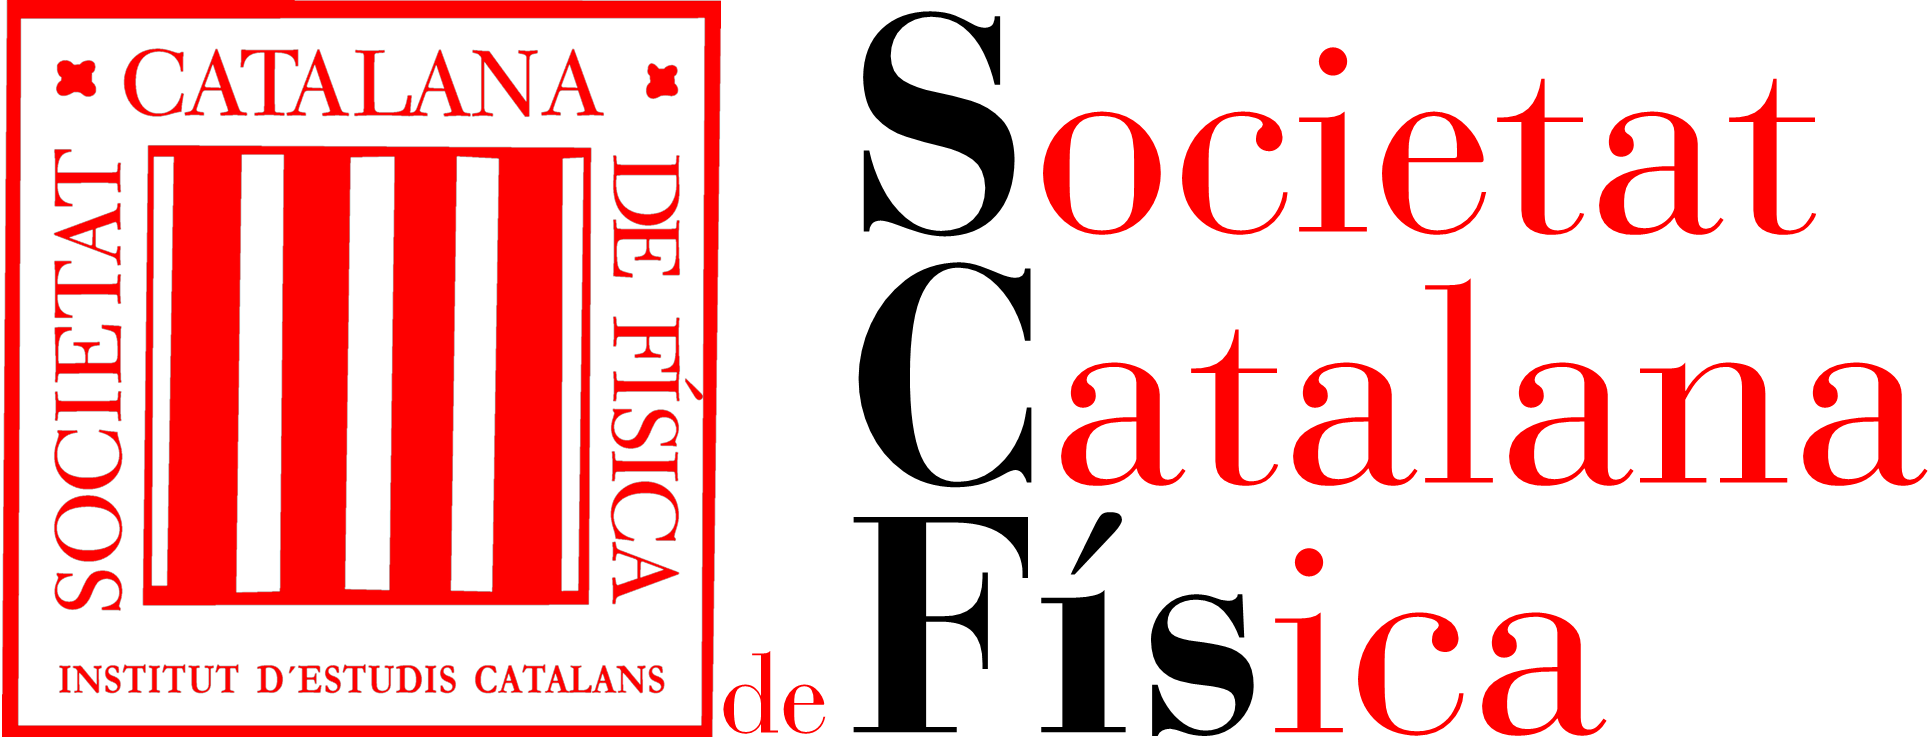 Societat Catalana de Física